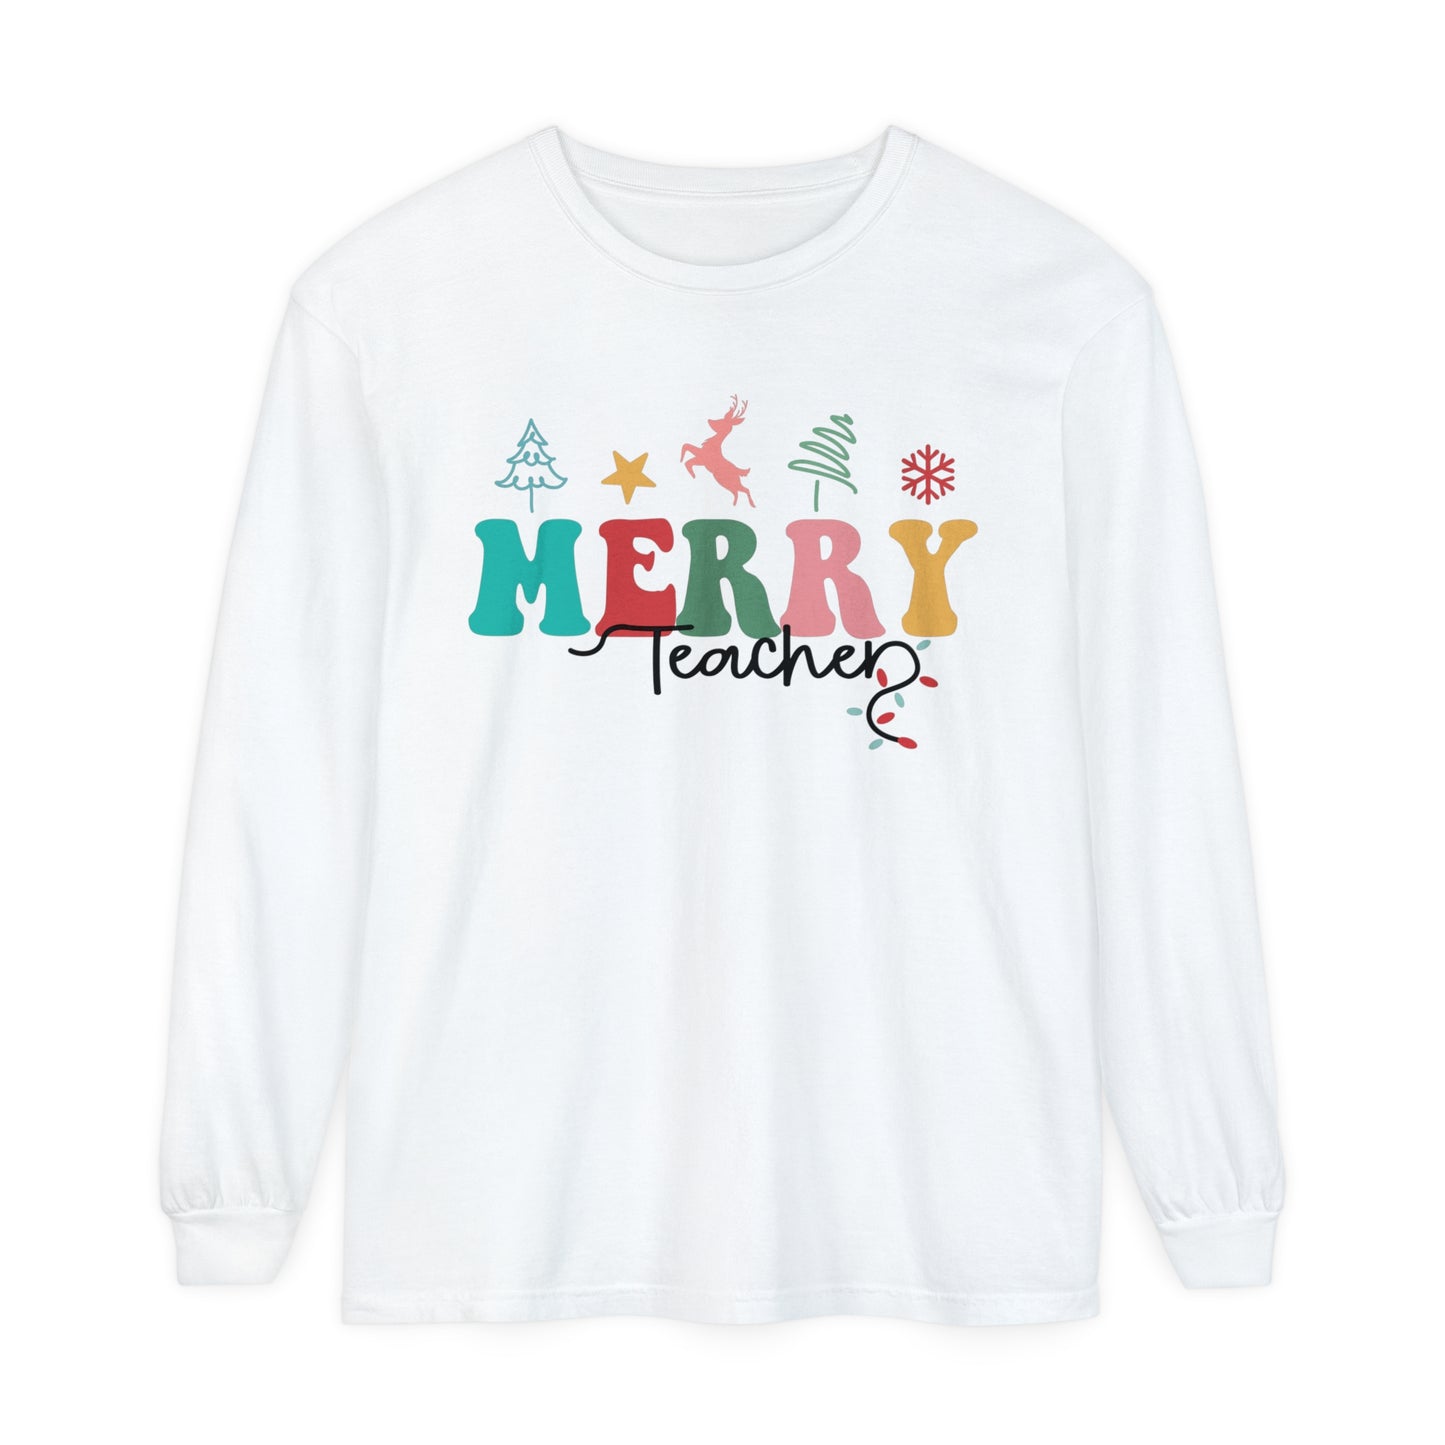 Merry Teacher Women's Christmas Loose Long Sleeve T-Shirt